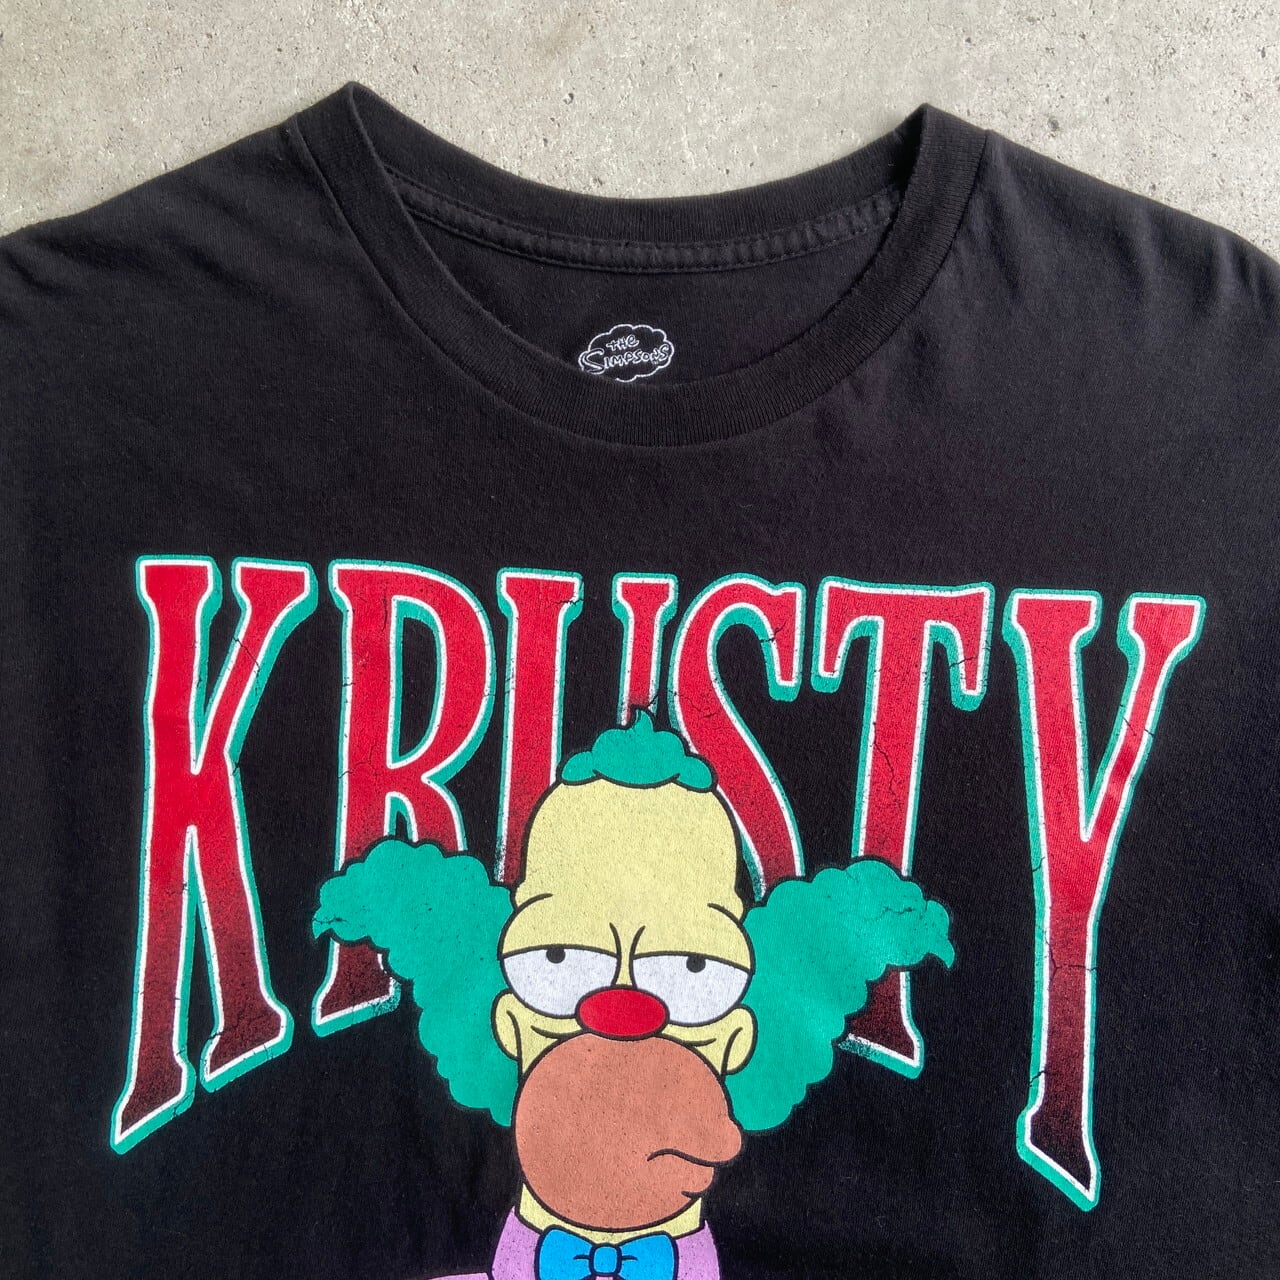 Simpsons シンプソンズ Krusty The Clown クラスティ・ザ・クラウン キャラクター Tシャツ メンズM 古着 ブラック  黒【Tシャツ】【FSS2308-50b】 | cave 古着屋【公式】古着通販サイト